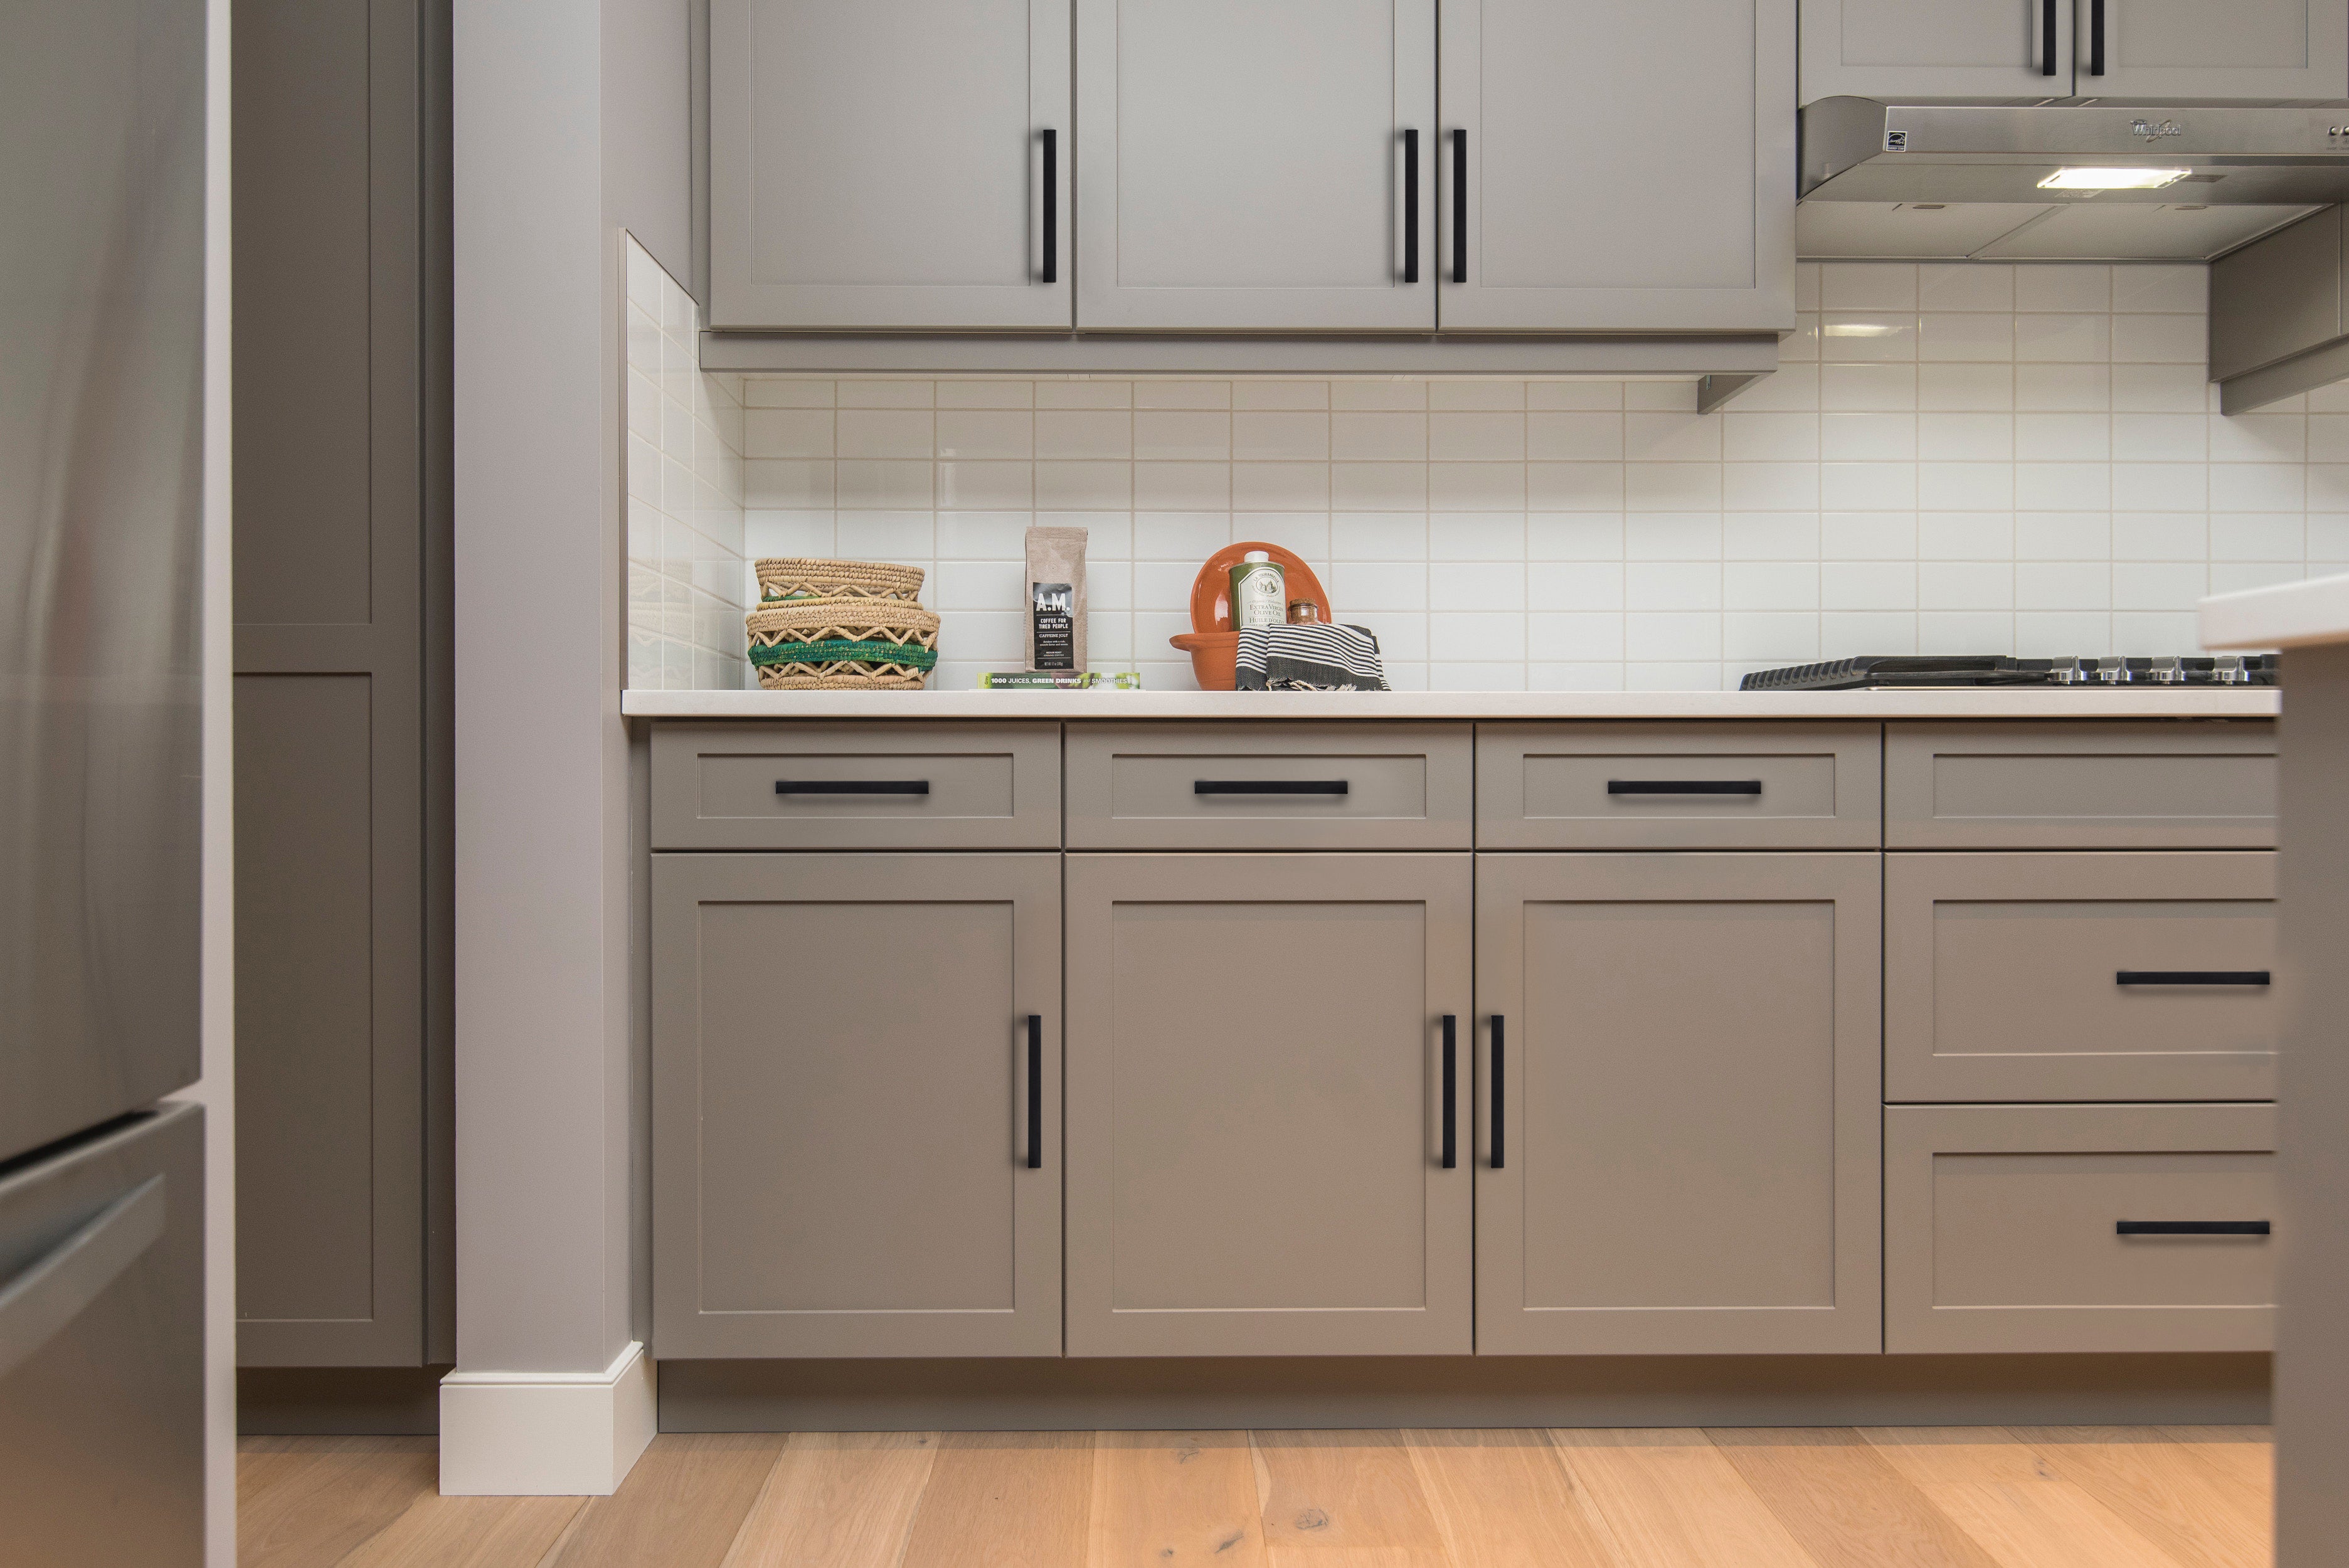 kitchen cabinet handles design india